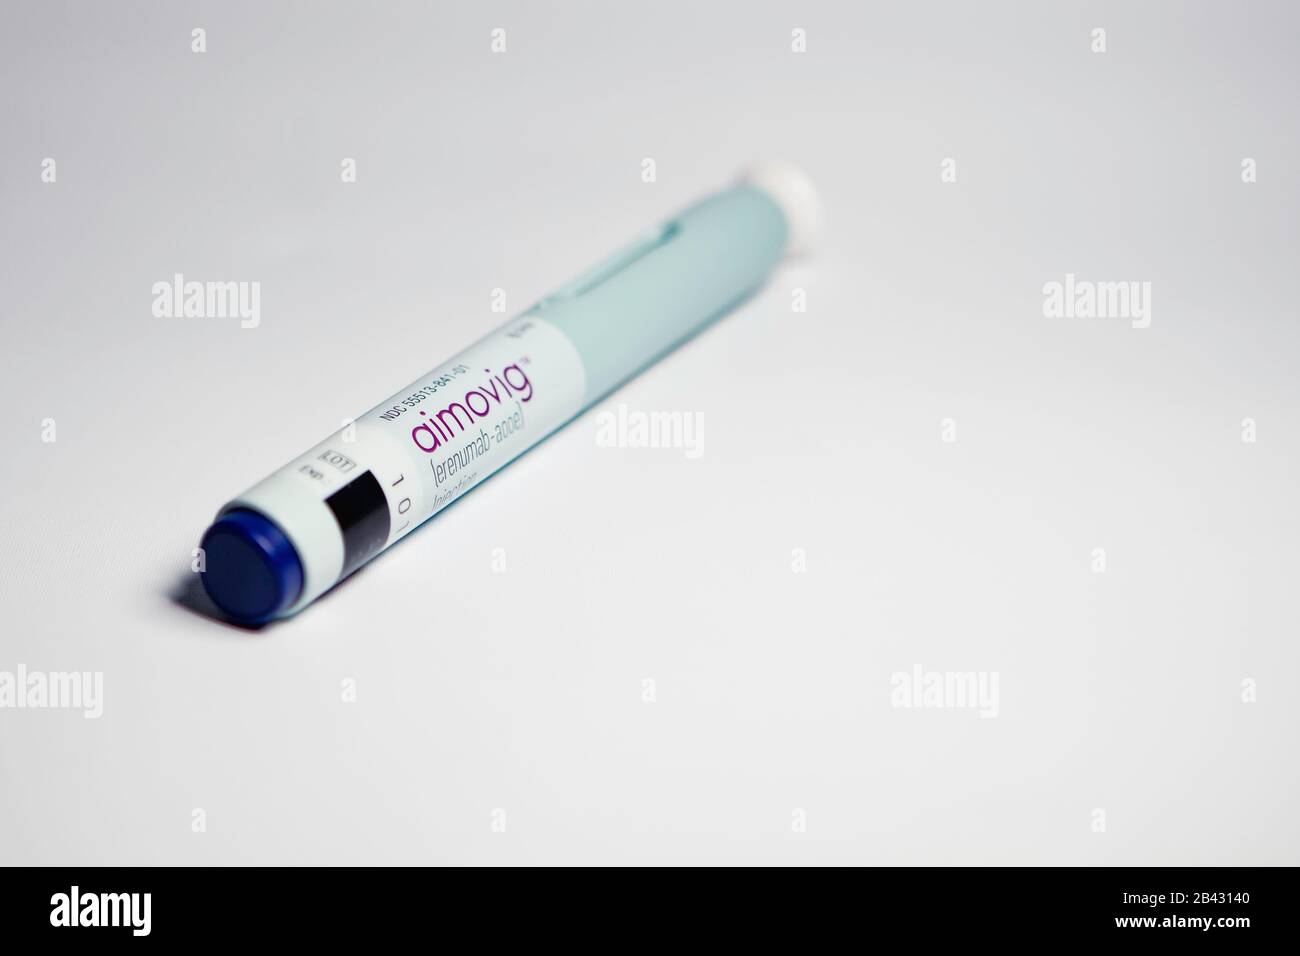 Aimovig (erenumab-aooe) 70 mg auto-injector device, prescription drug for  migraine prevention, studio, color, United States Stock Photo - Alamy